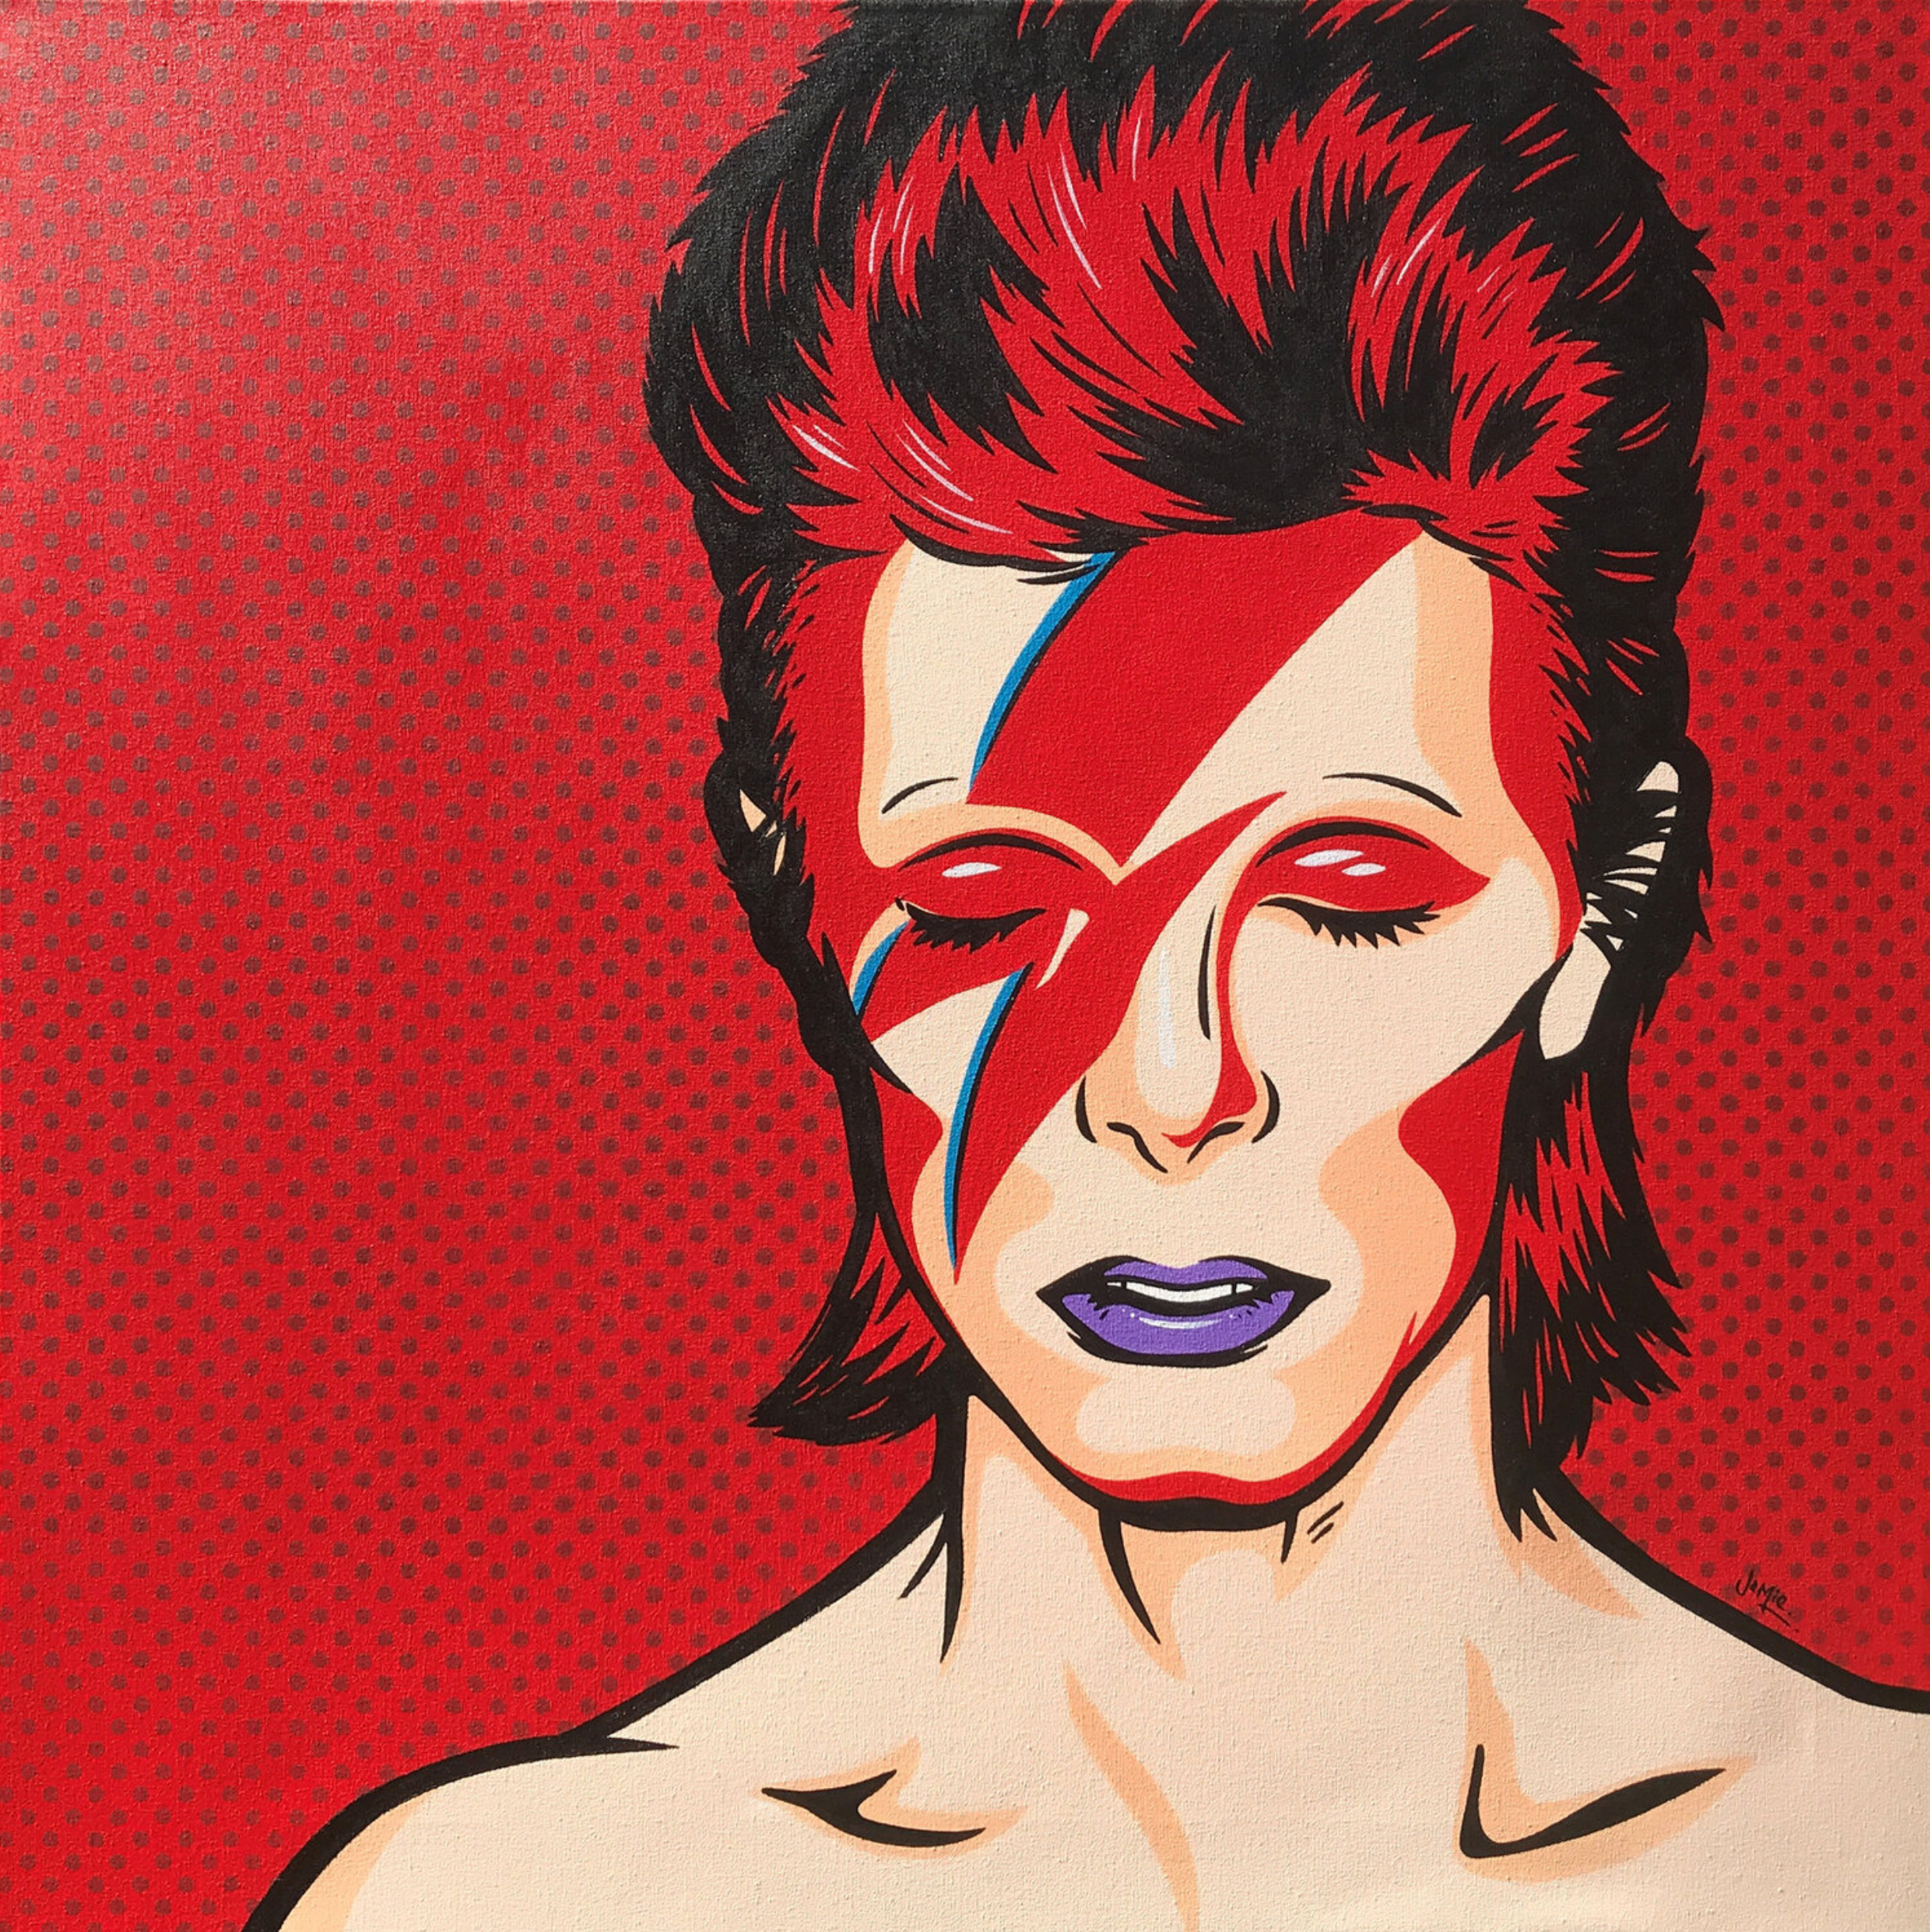 杰米-李的 "Ziggy "漫画风格的流行艺术画，具有原创设计，大卫-鲍伊在红色背景上扮演阿拉丁-萨恩。手绘的流行艺术版本的传奇专辑封面。